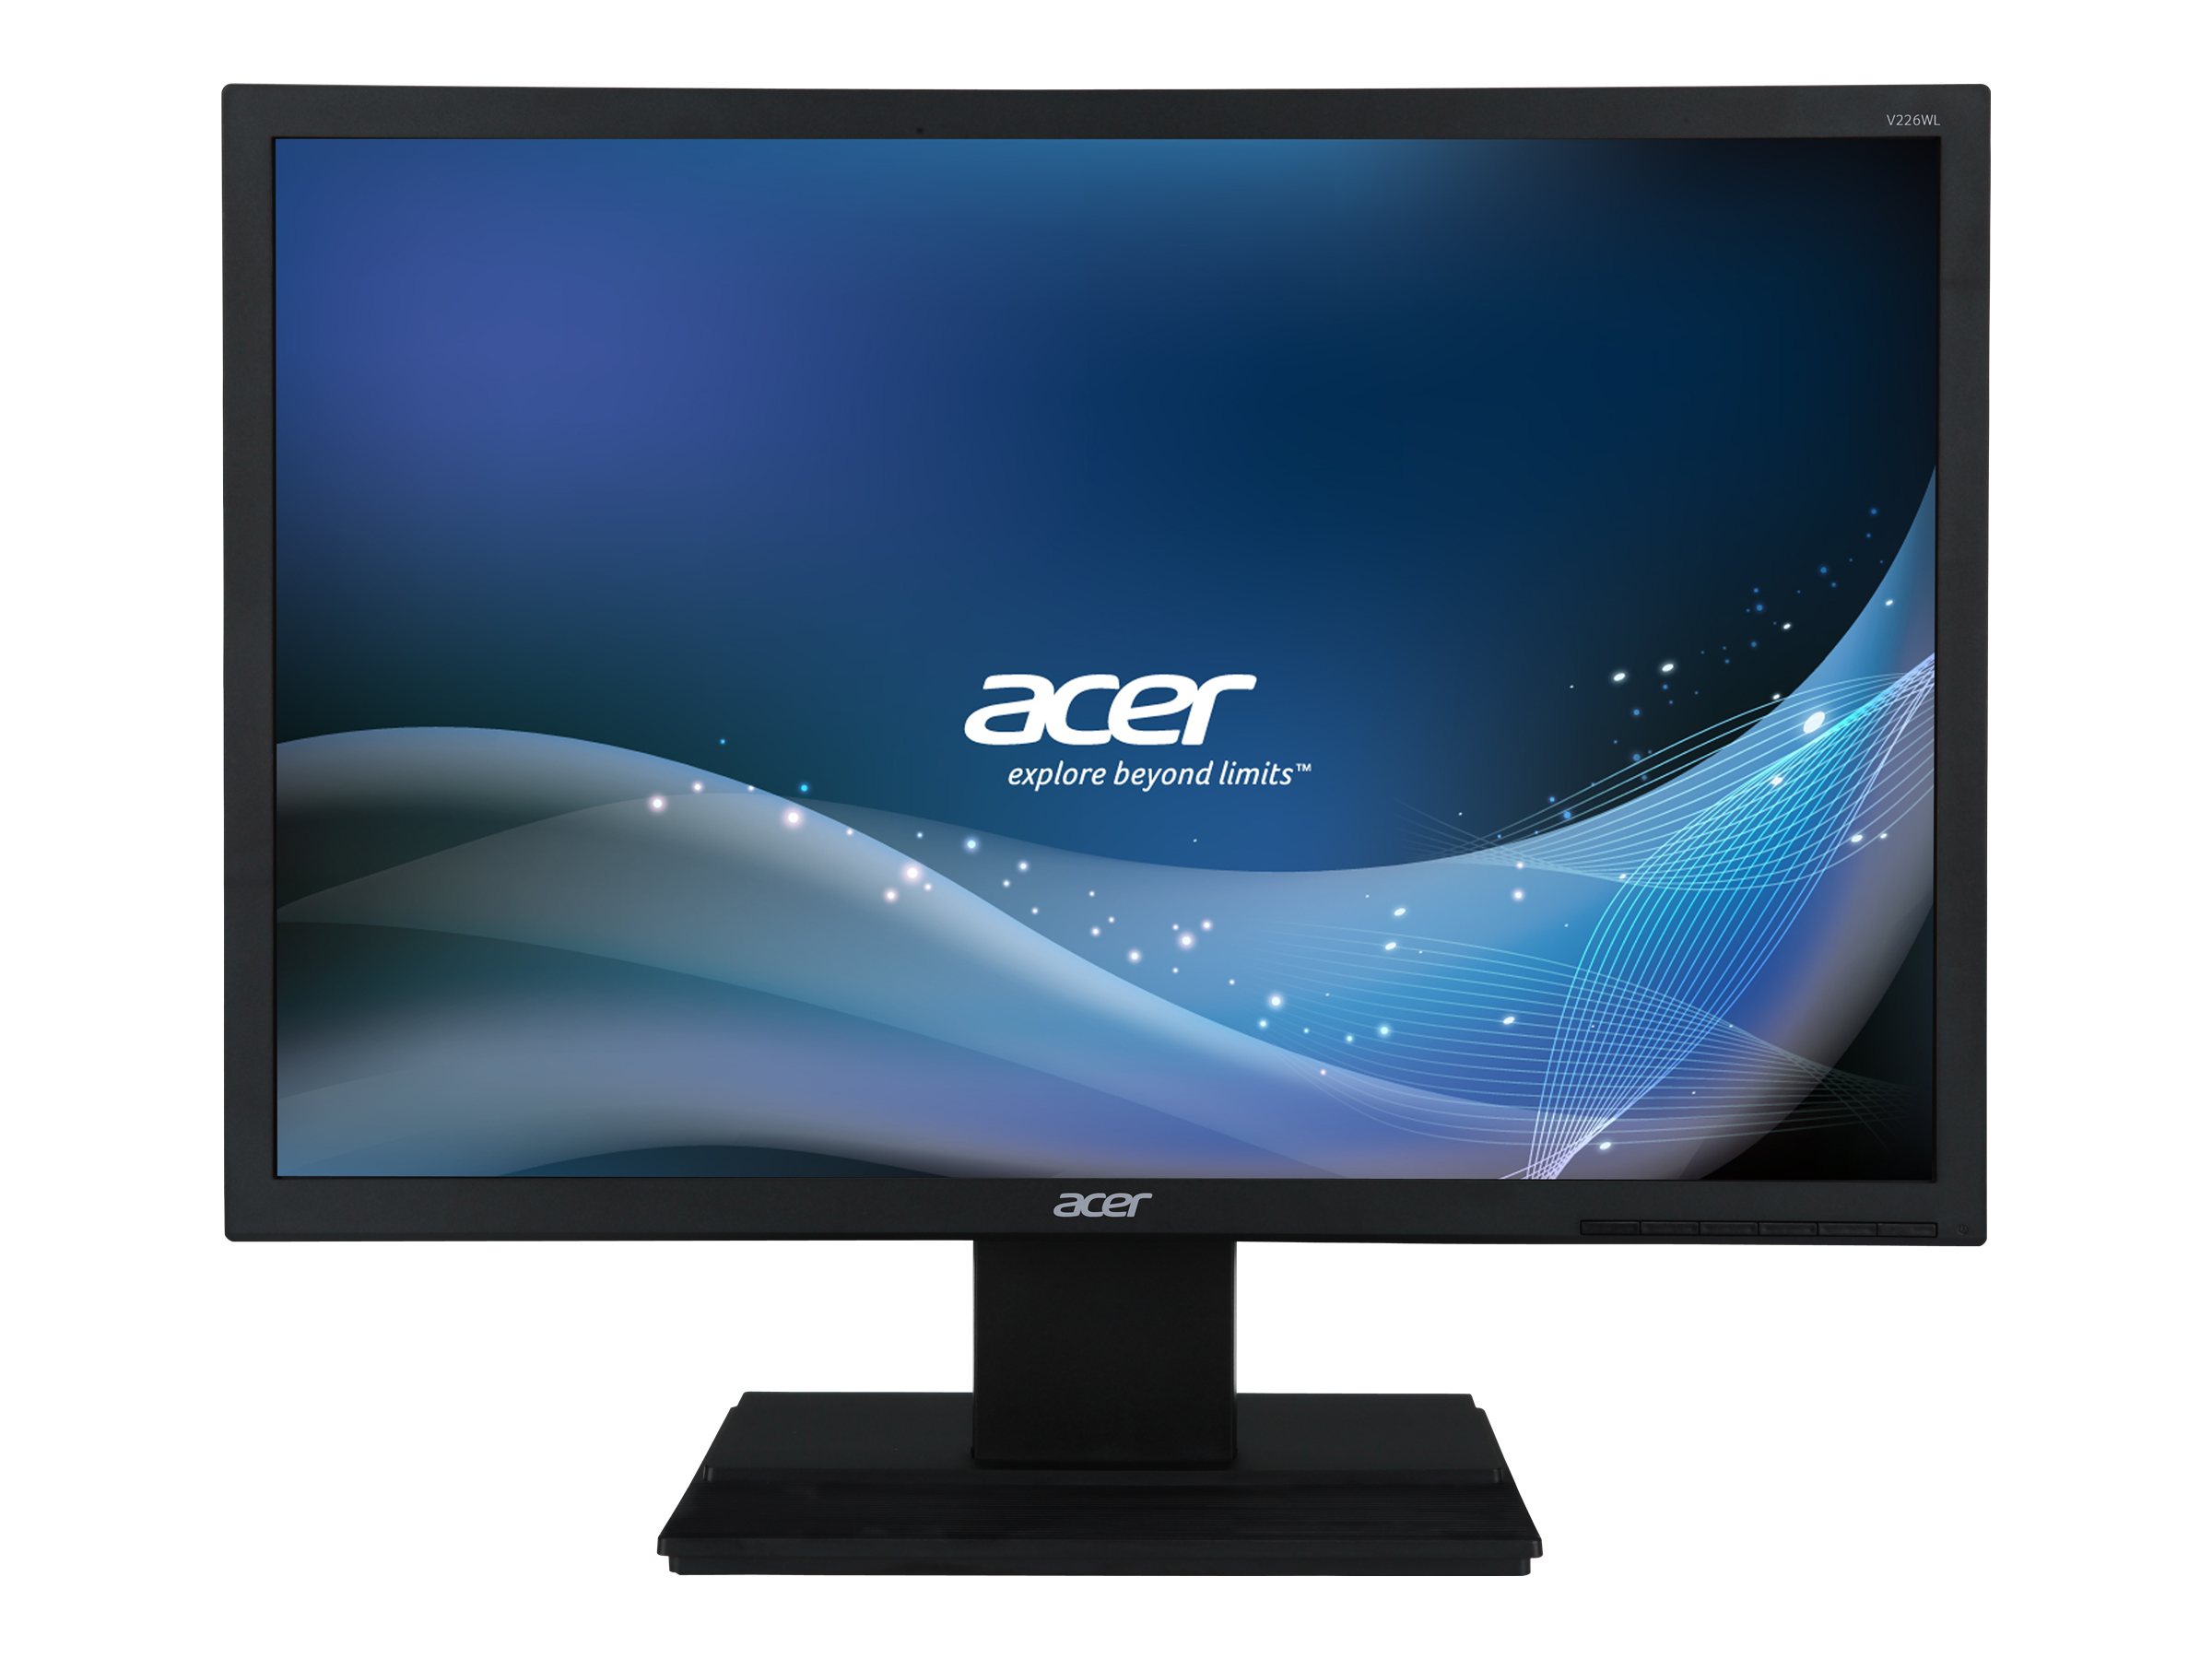 Acer V226WLbmd 22 1680 x 1050 DVI VGA (HD-15)